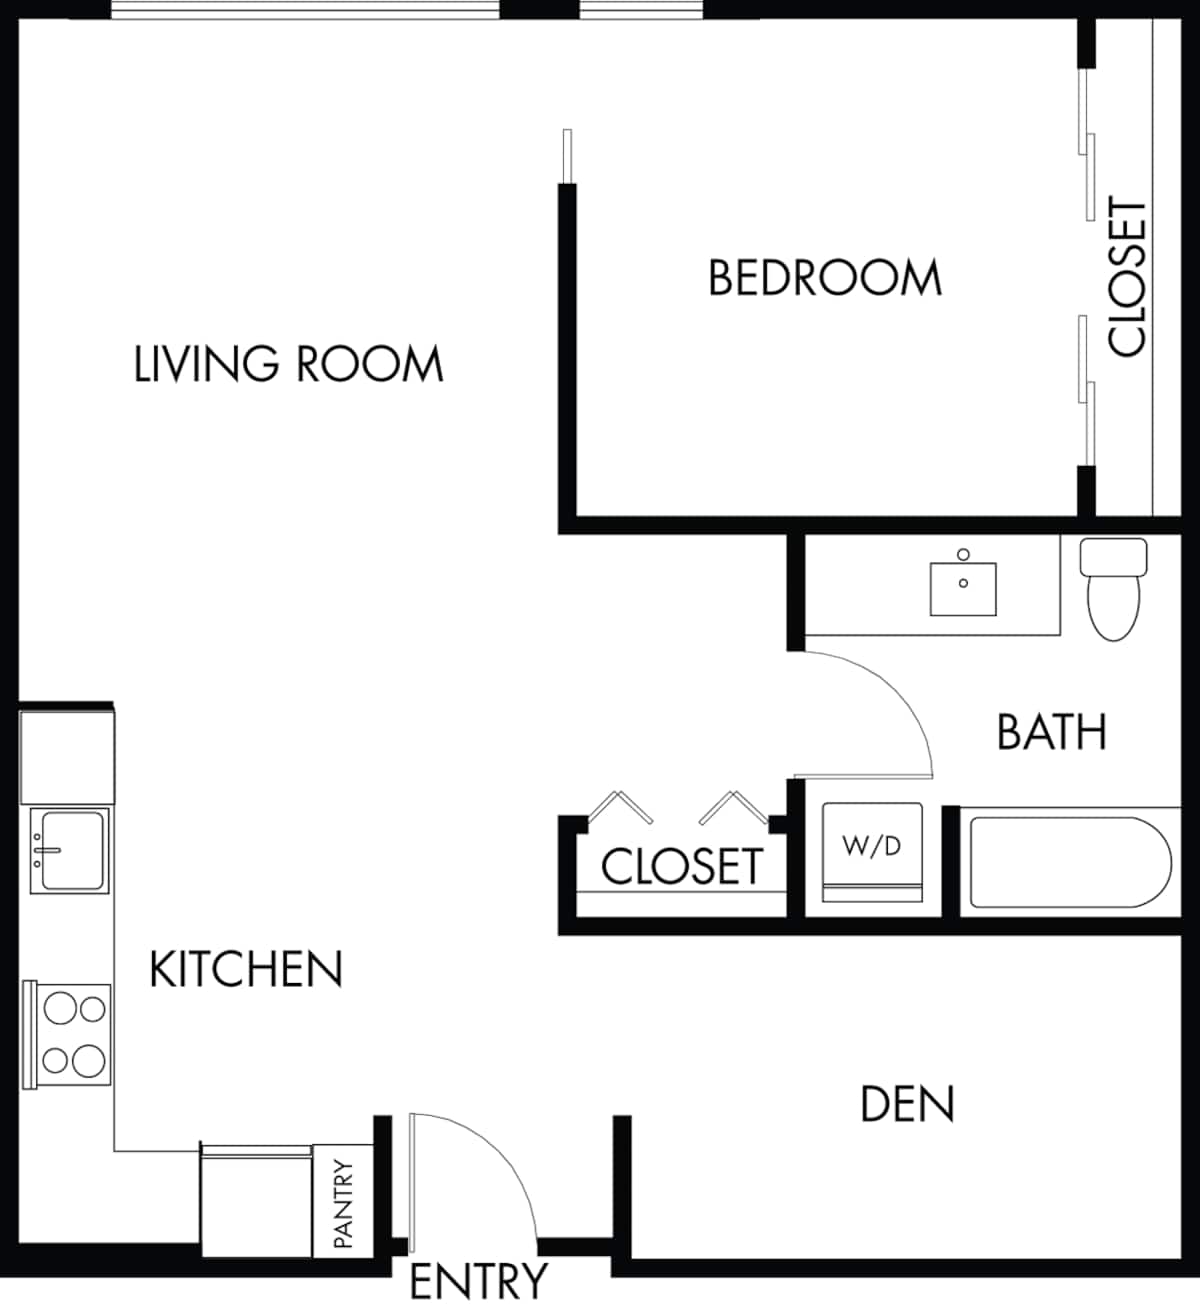 Floorplan diagram for 1.1d, showing 1 bedroom